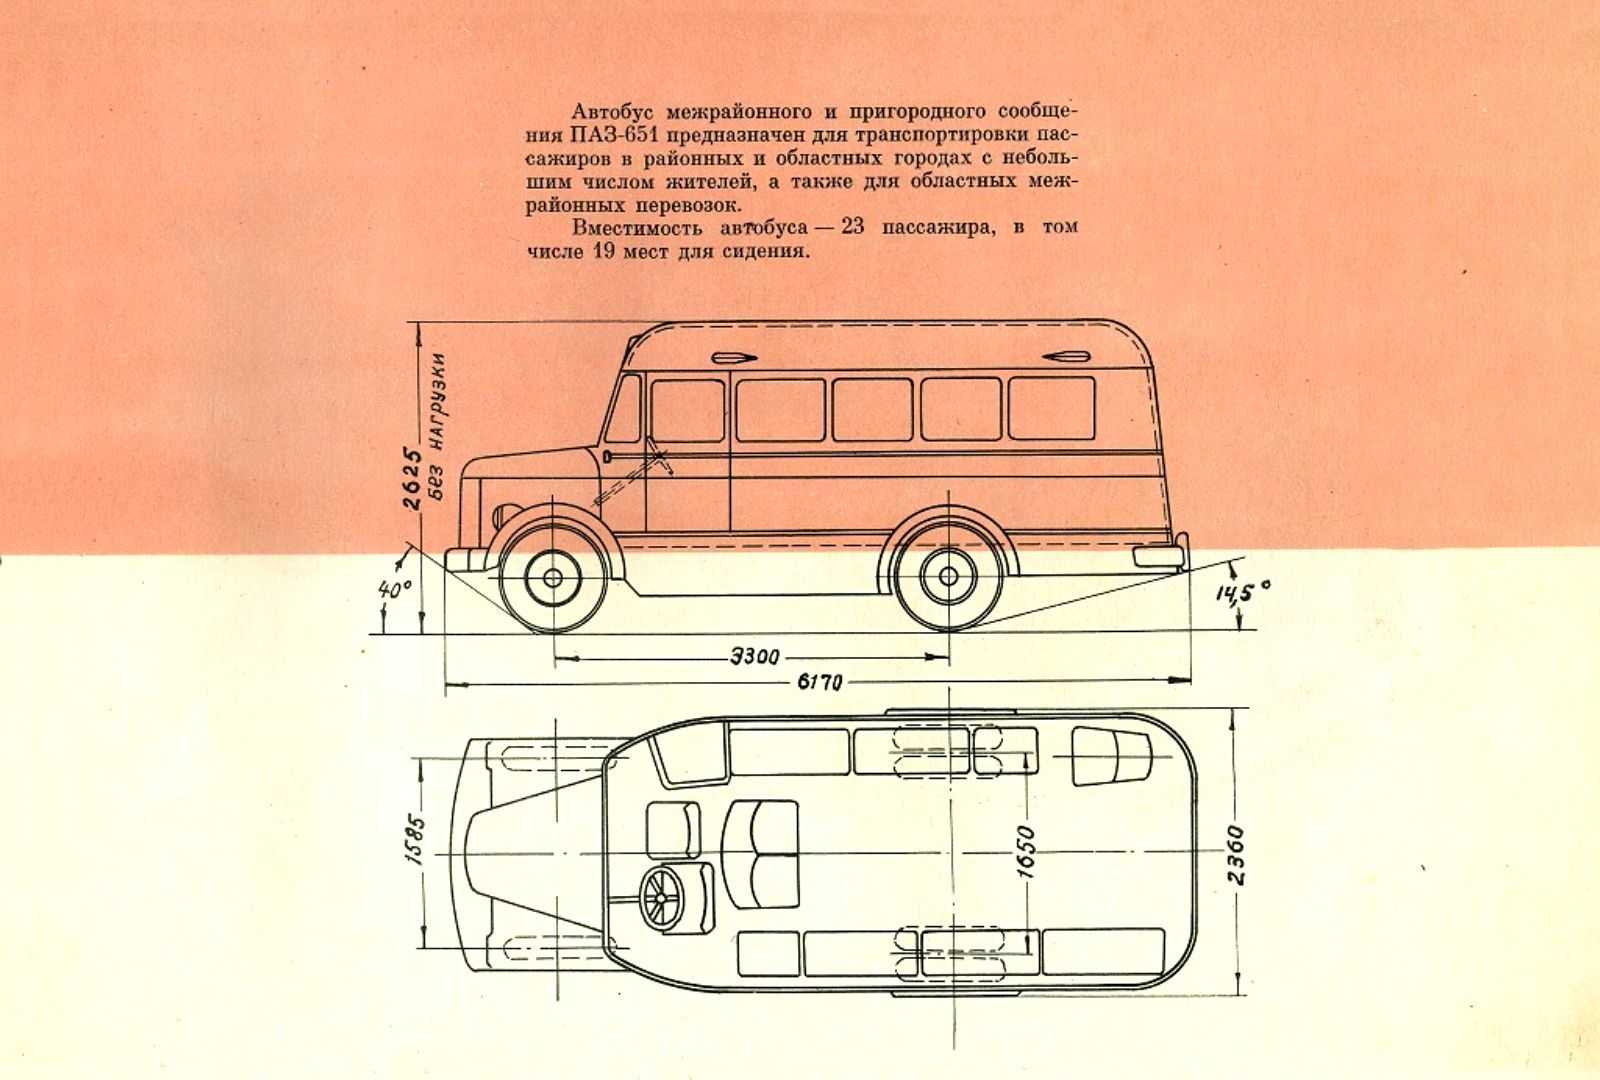 Общественный извозчик. пассажирский транспорт 1941-1968 гг(часть 2)